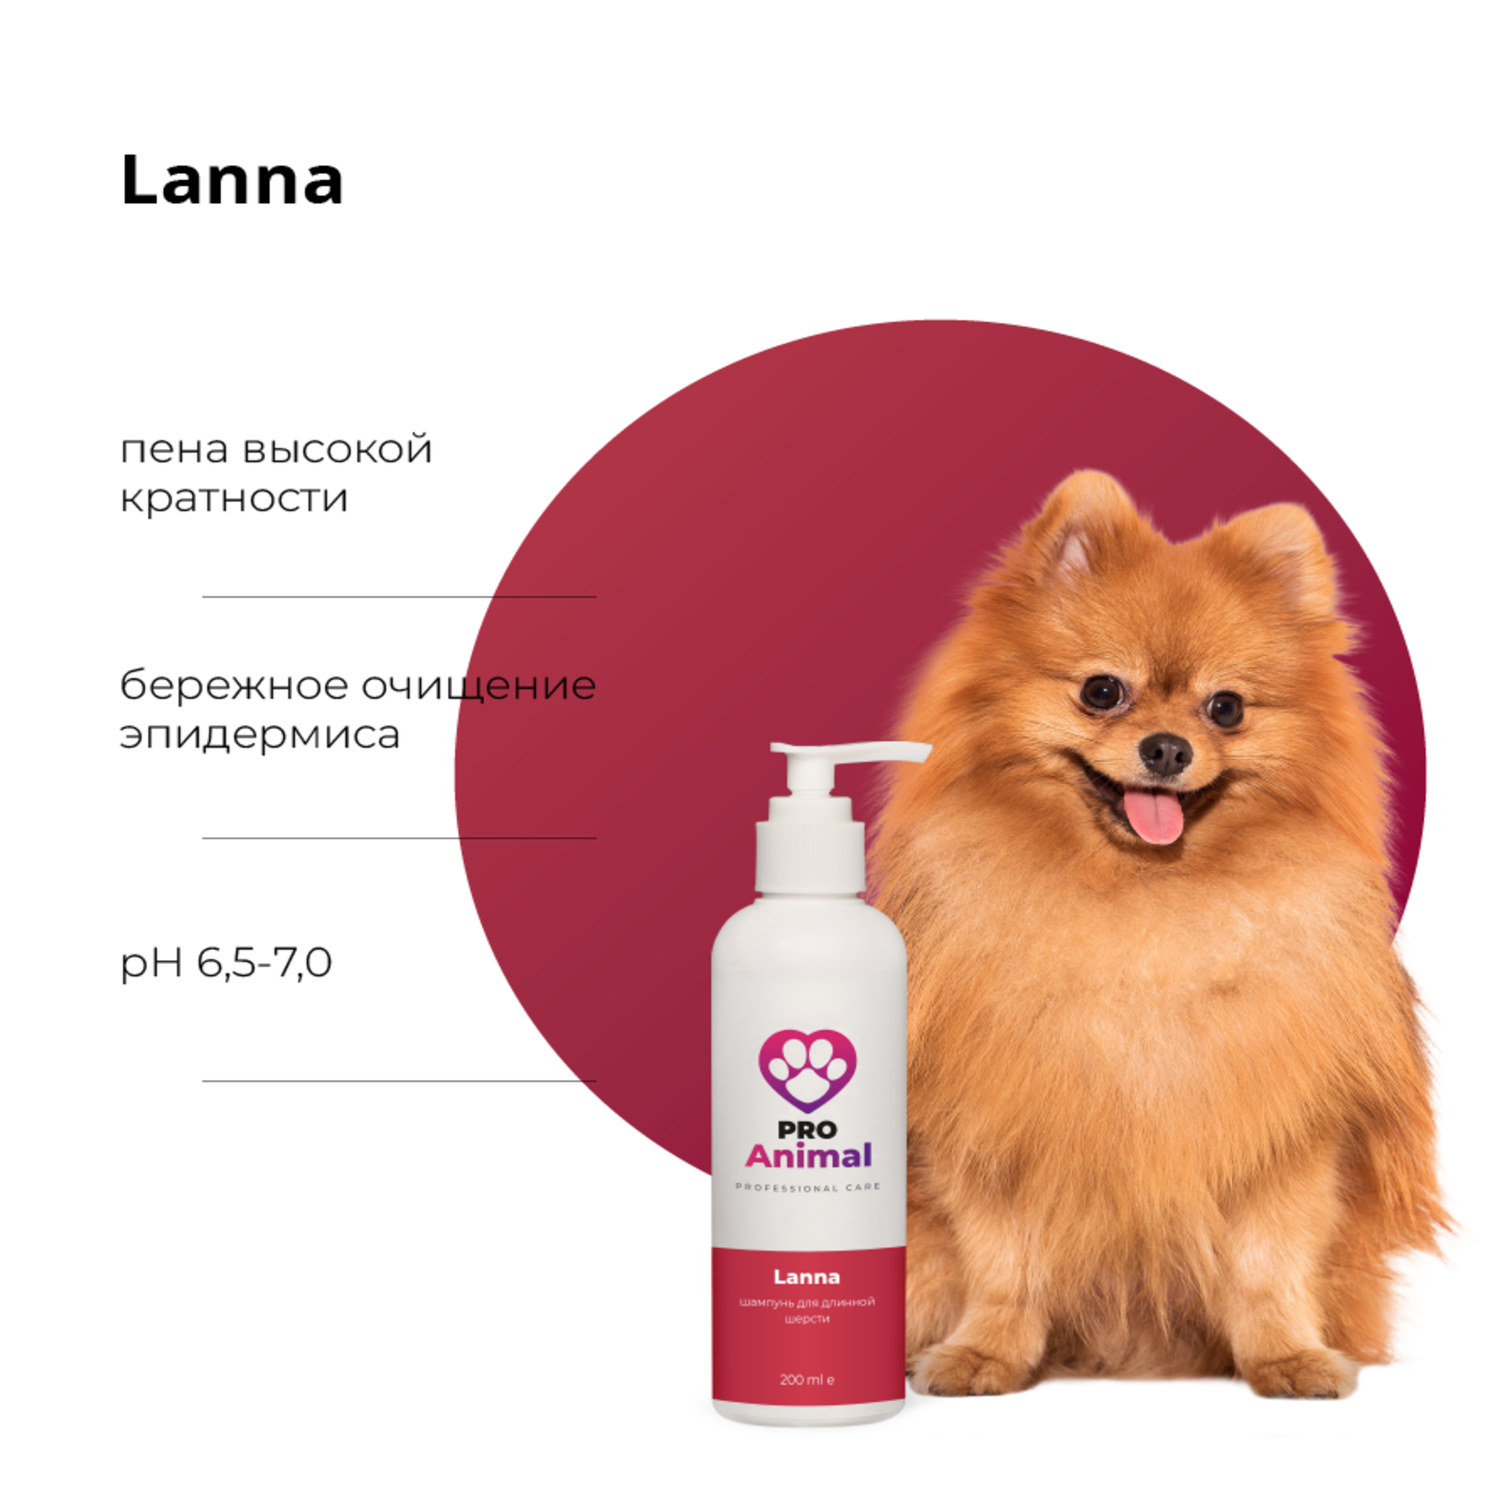 Шампунь Lanna ProAnimal для длинной шерсти профессиональный увлажняющий для собак - фото 2